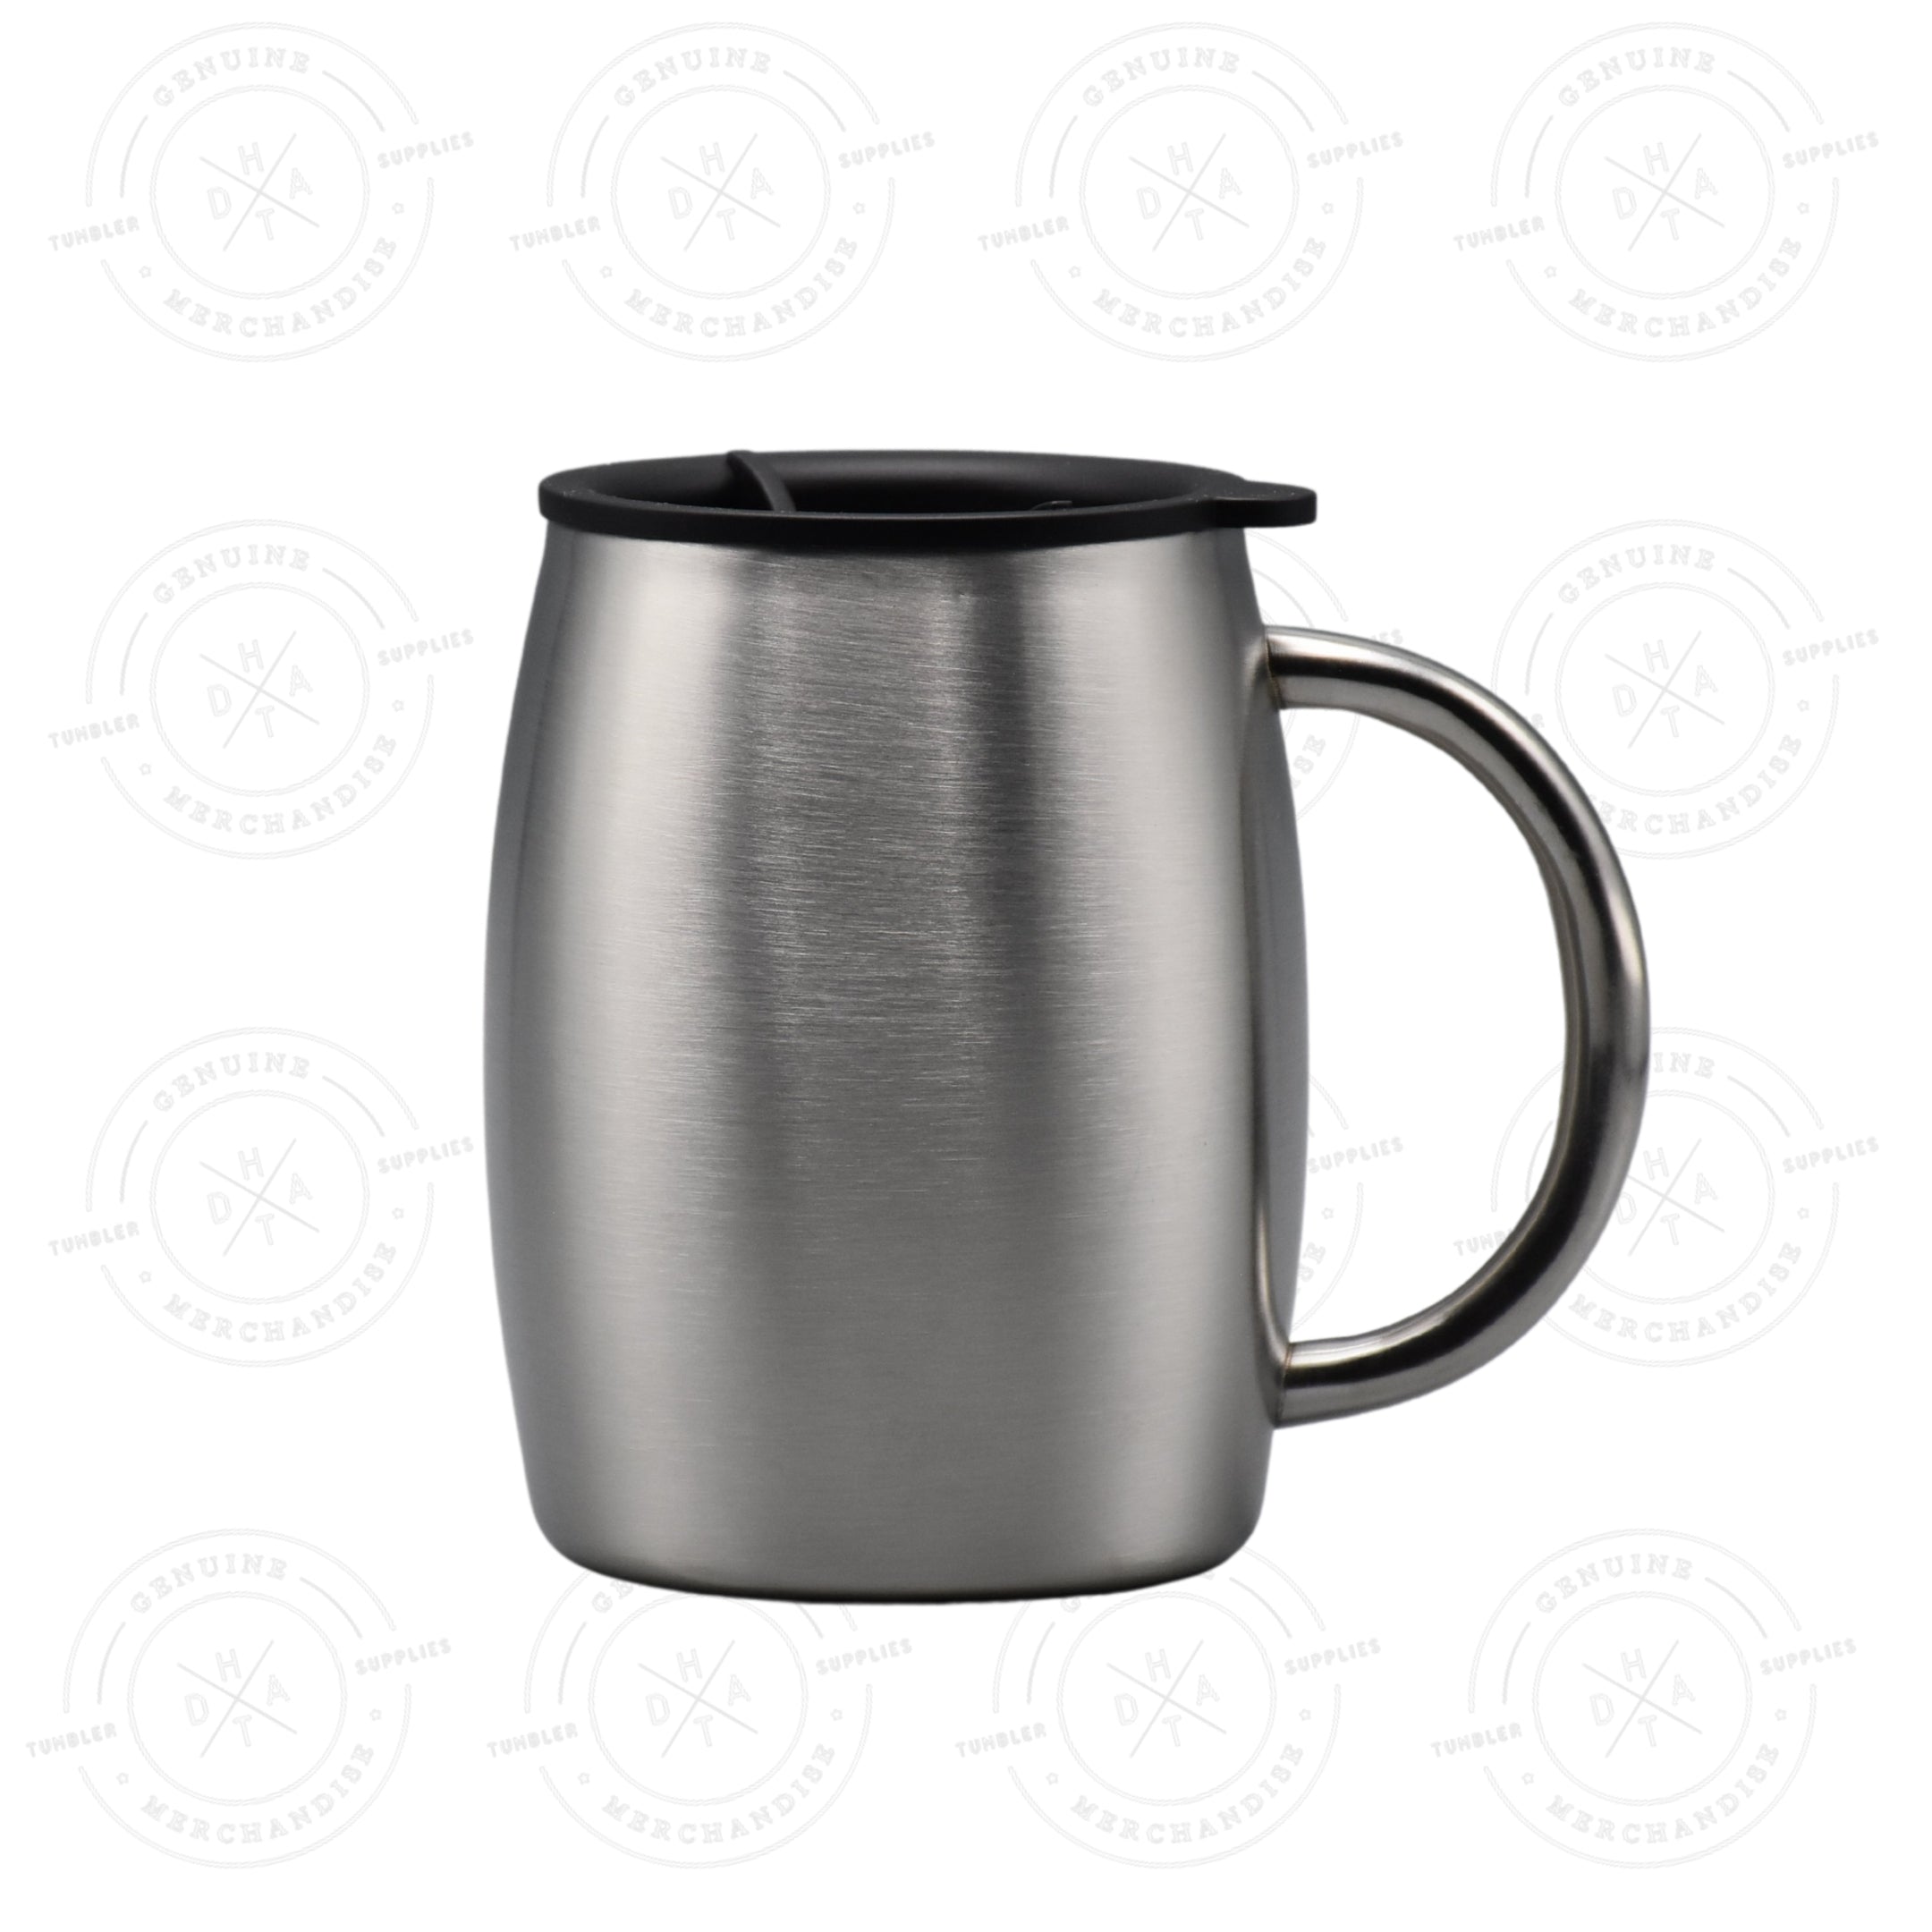 14 oz. Coffee Mug